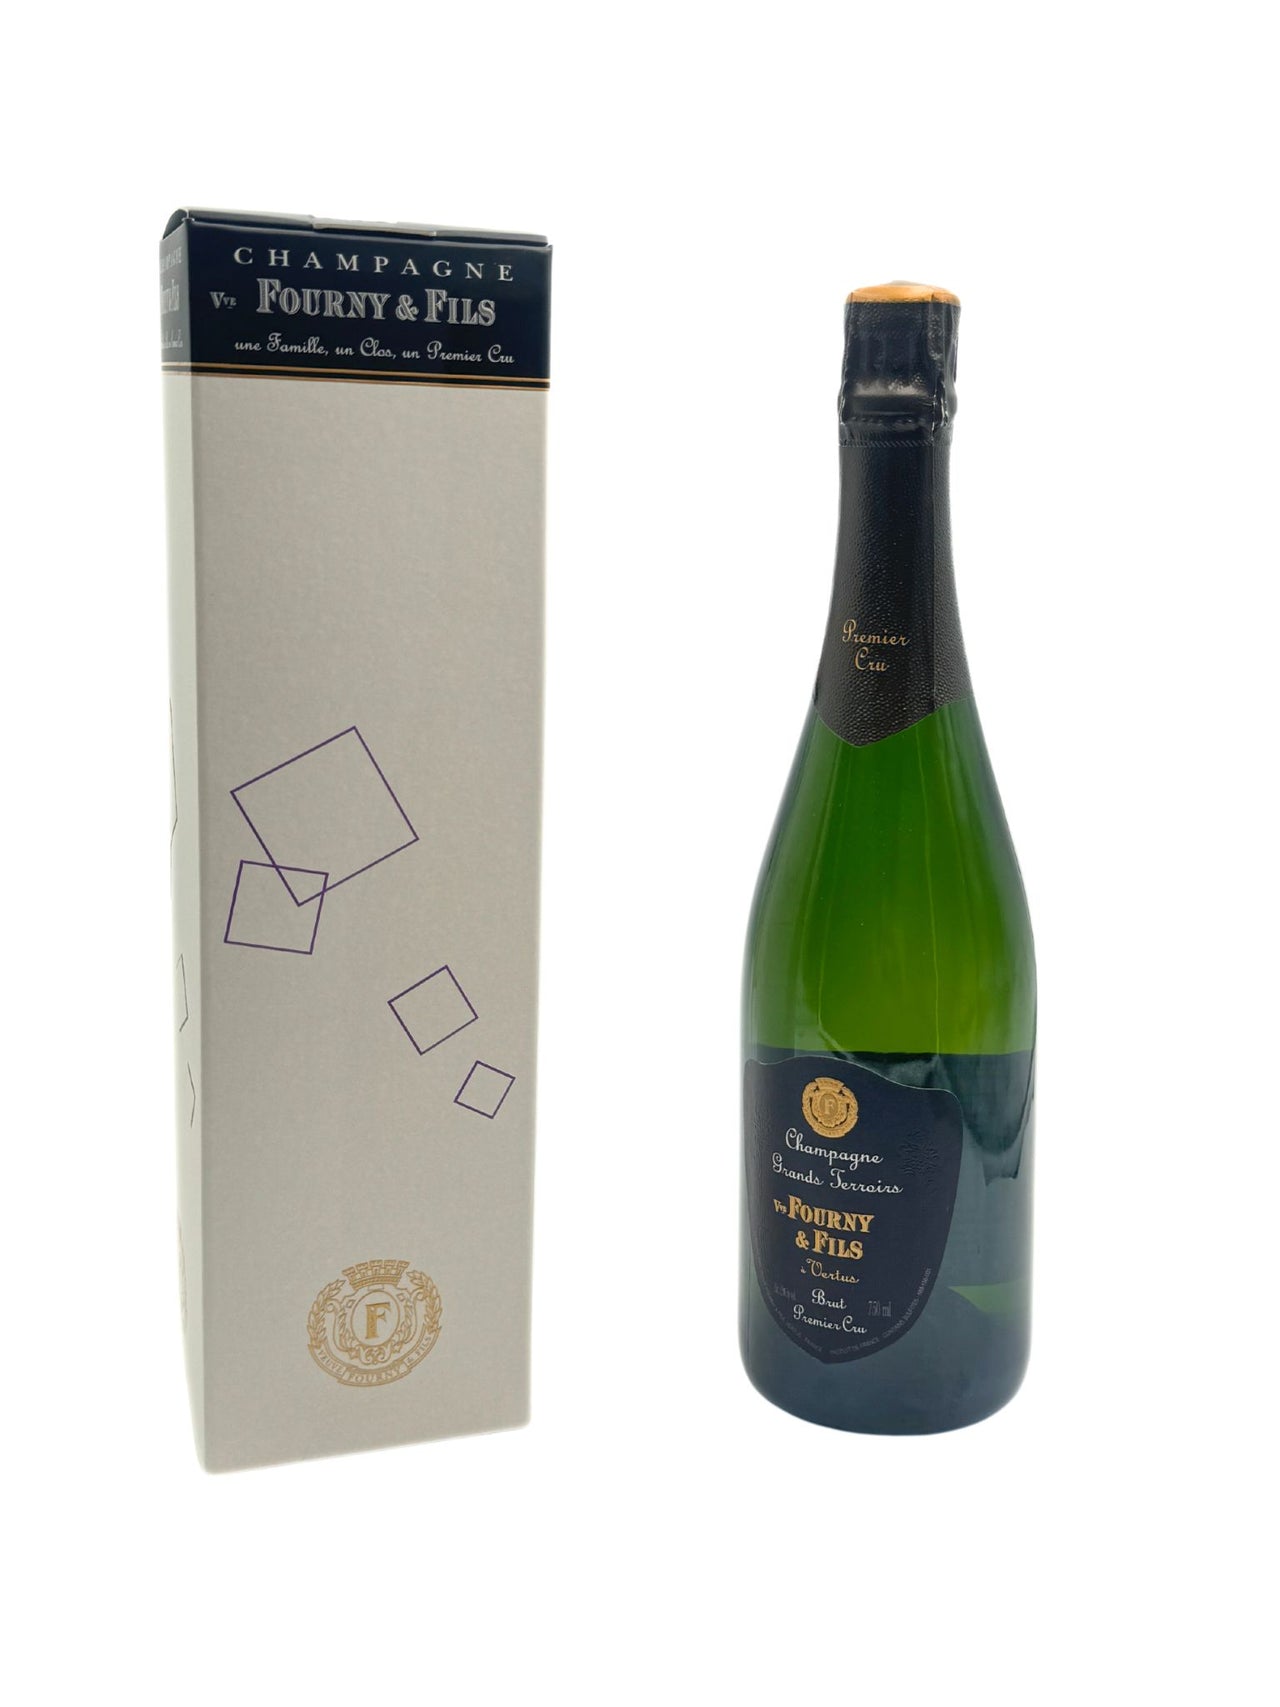 Champagne Grands Terroirs - Fourny & Fils - Rosato Vini 1